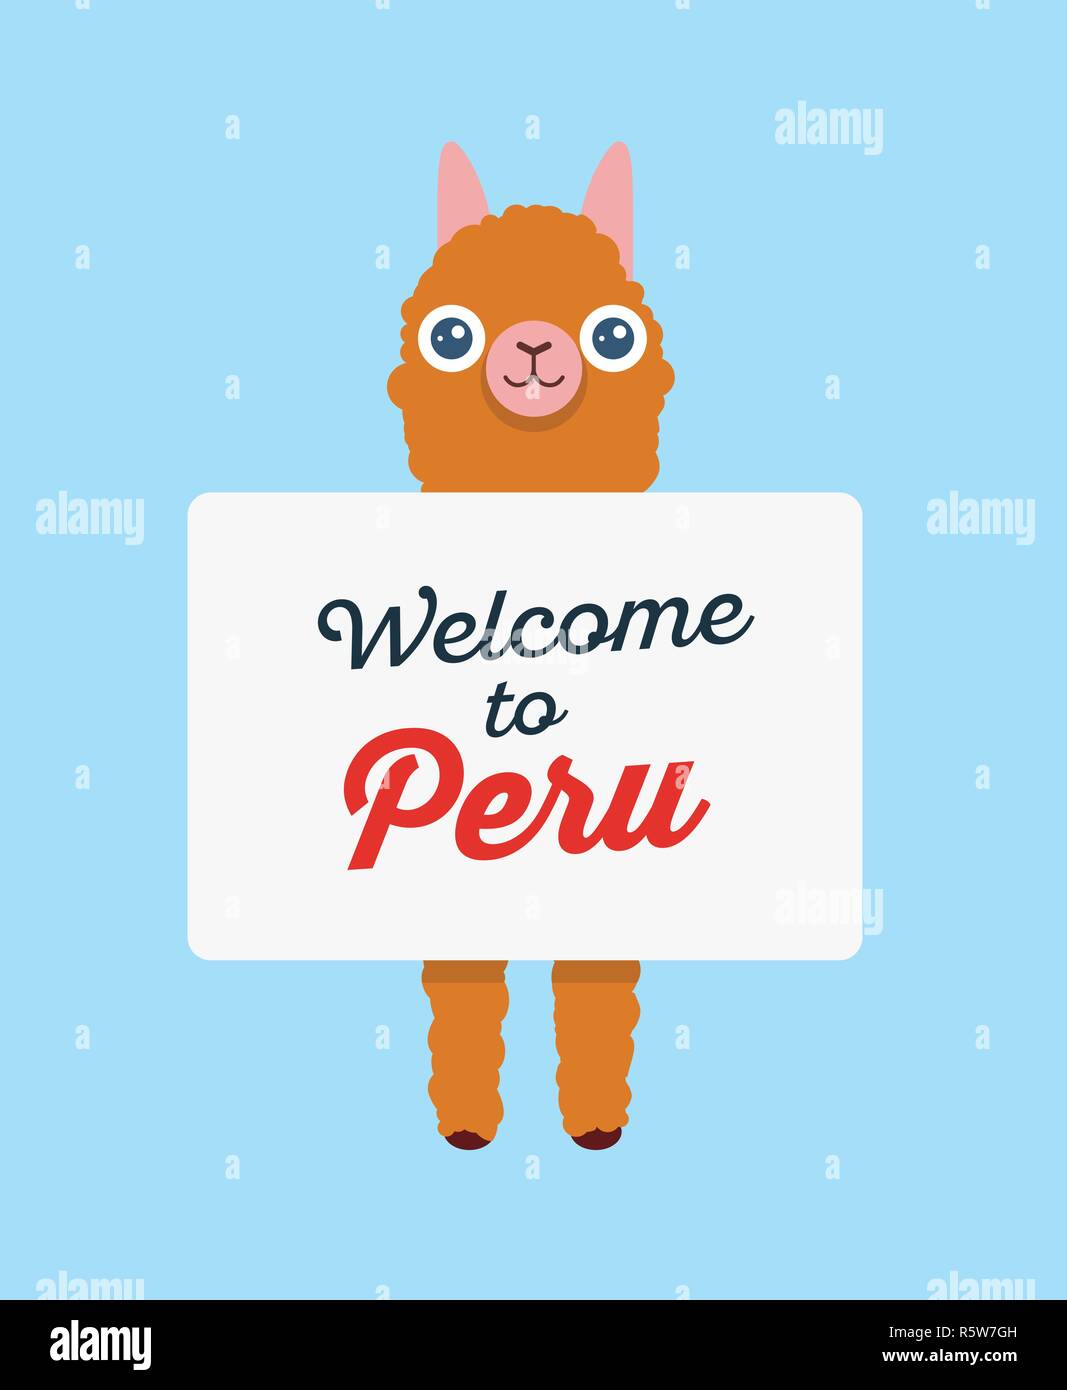 Alpaca lama azienda poster con invito, Benvenuti in Perù - Vettore illustrazione carino banner per turisti in Perù. Illustrazione Vettoriale